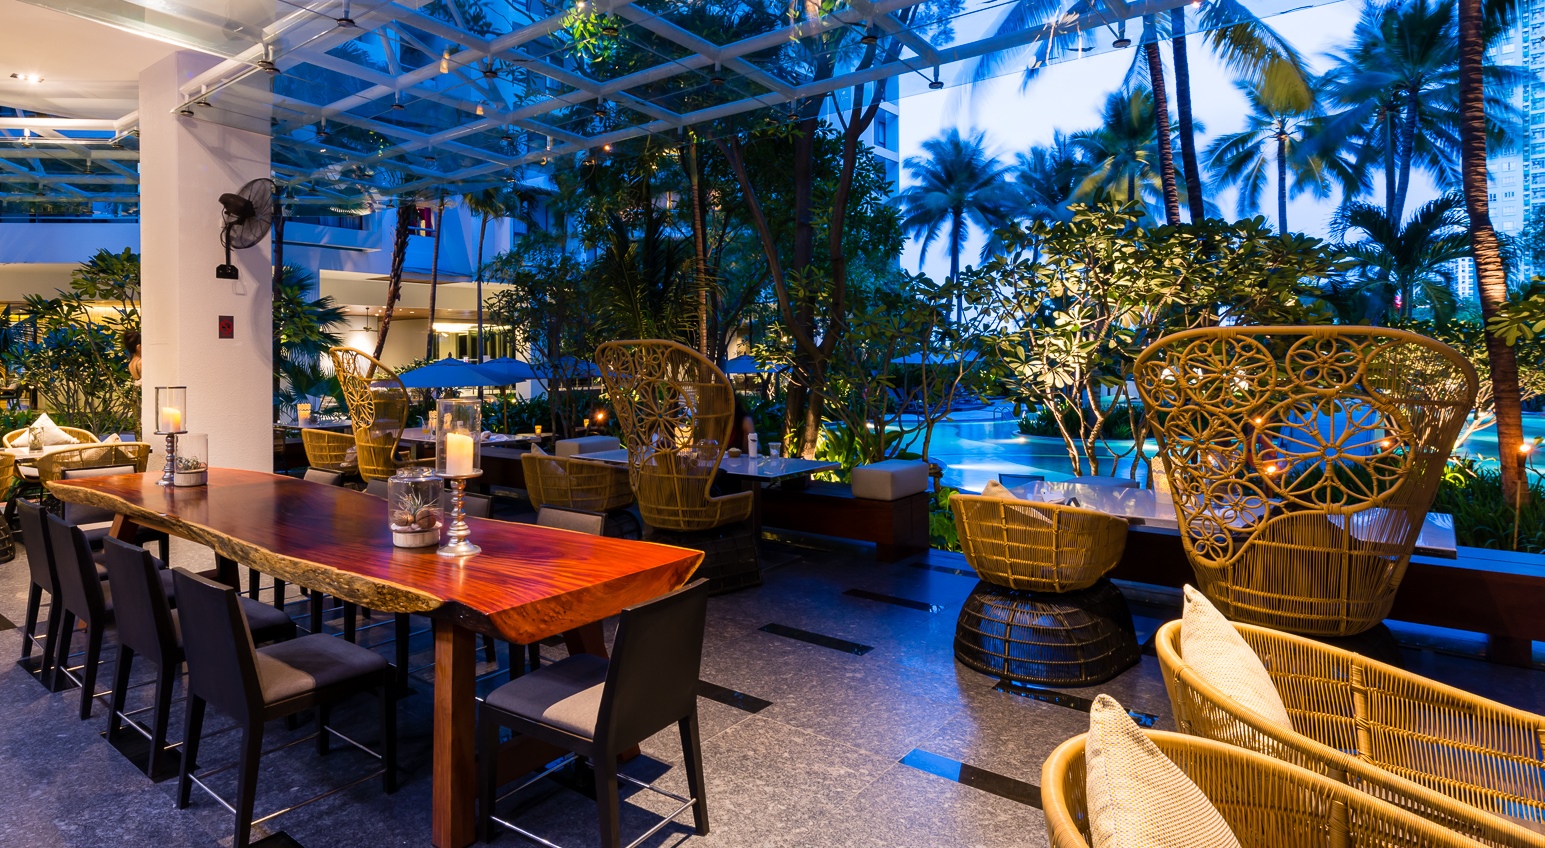 โรงแรม chatrium residence sathon bangkok restaurant